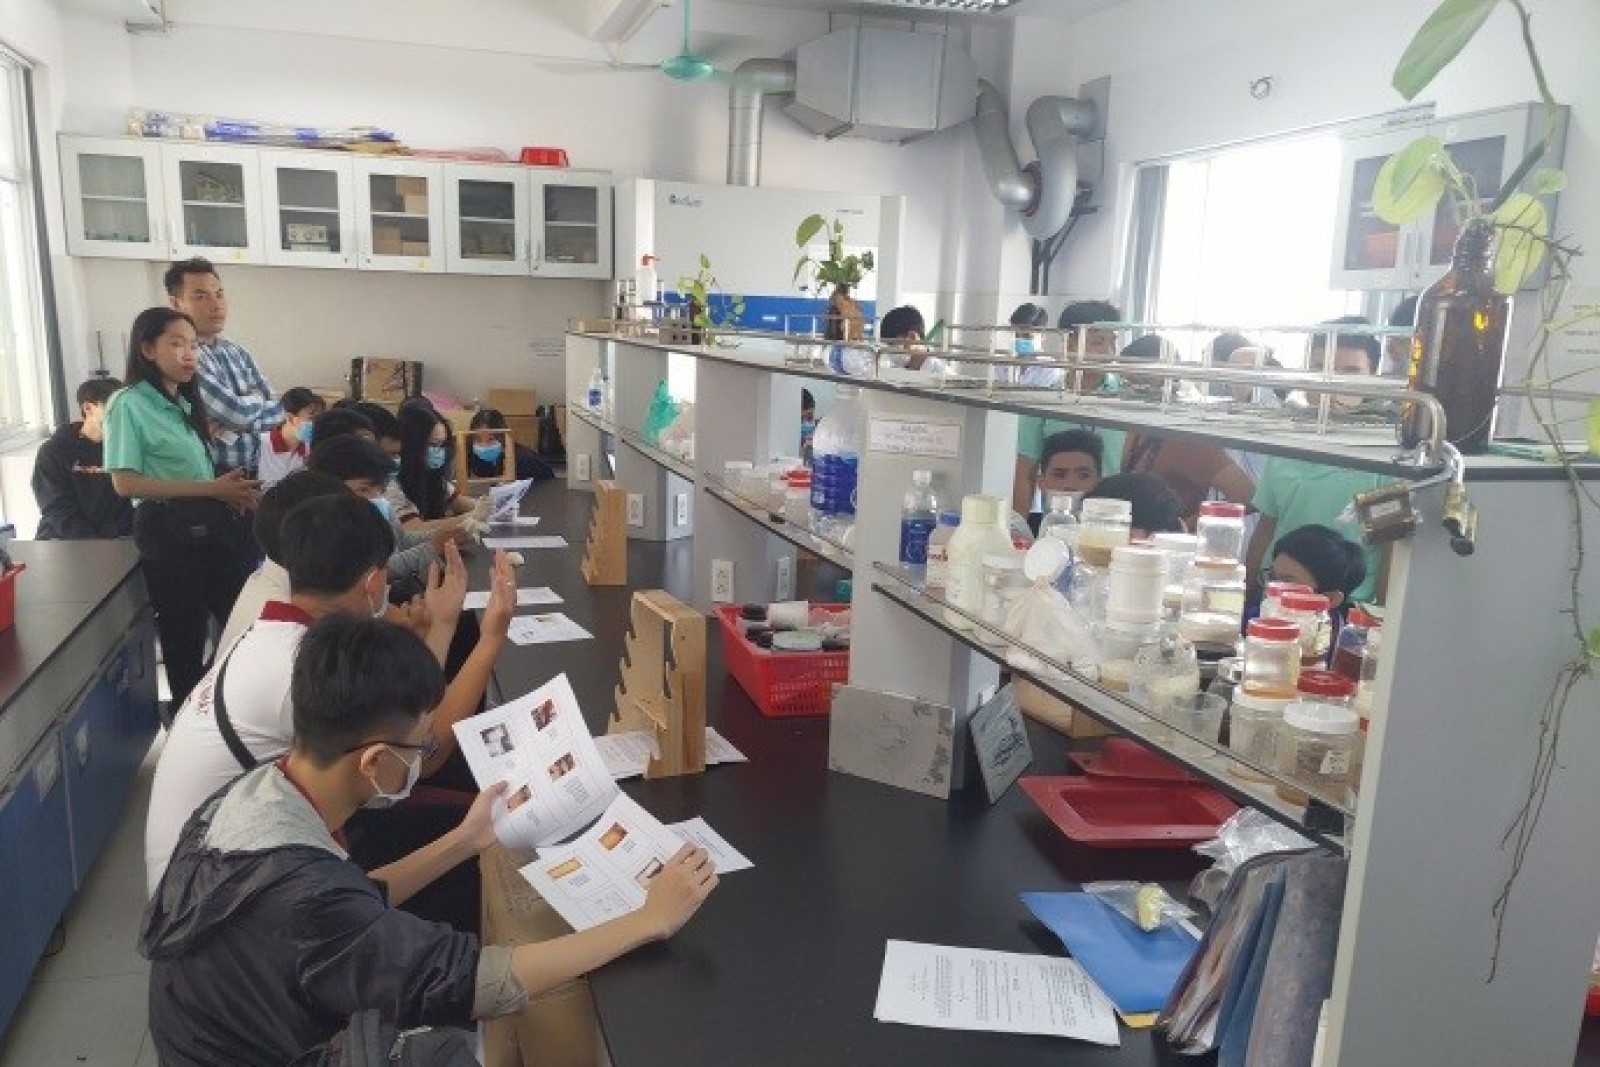 Chương trình hướng nghiệp thực tế tại các phòng thí nghiệm của Khoa Công nghệ Hóa học HUFI